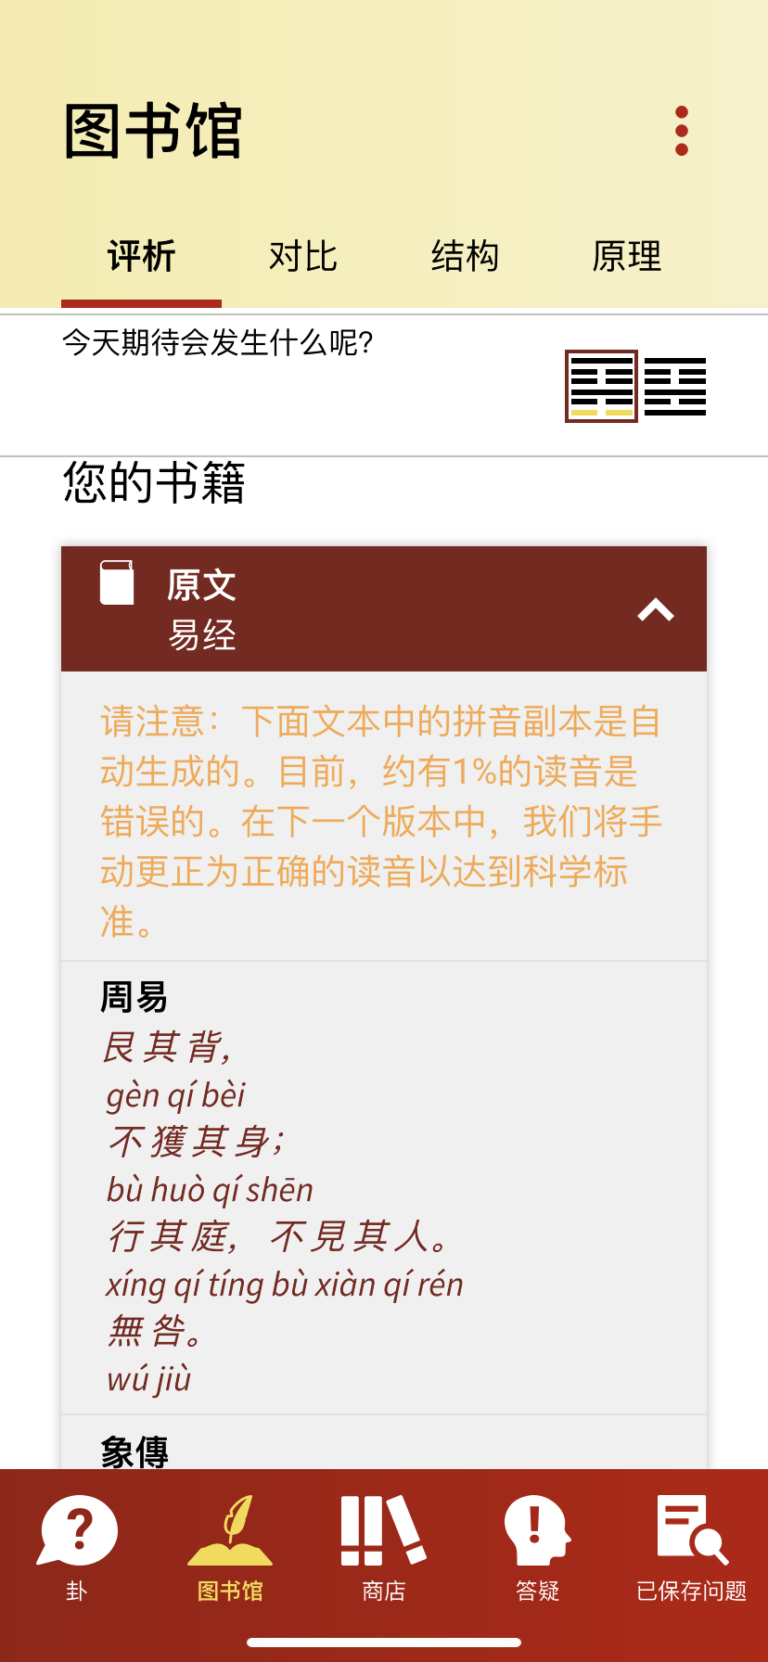 Original Chinese Text